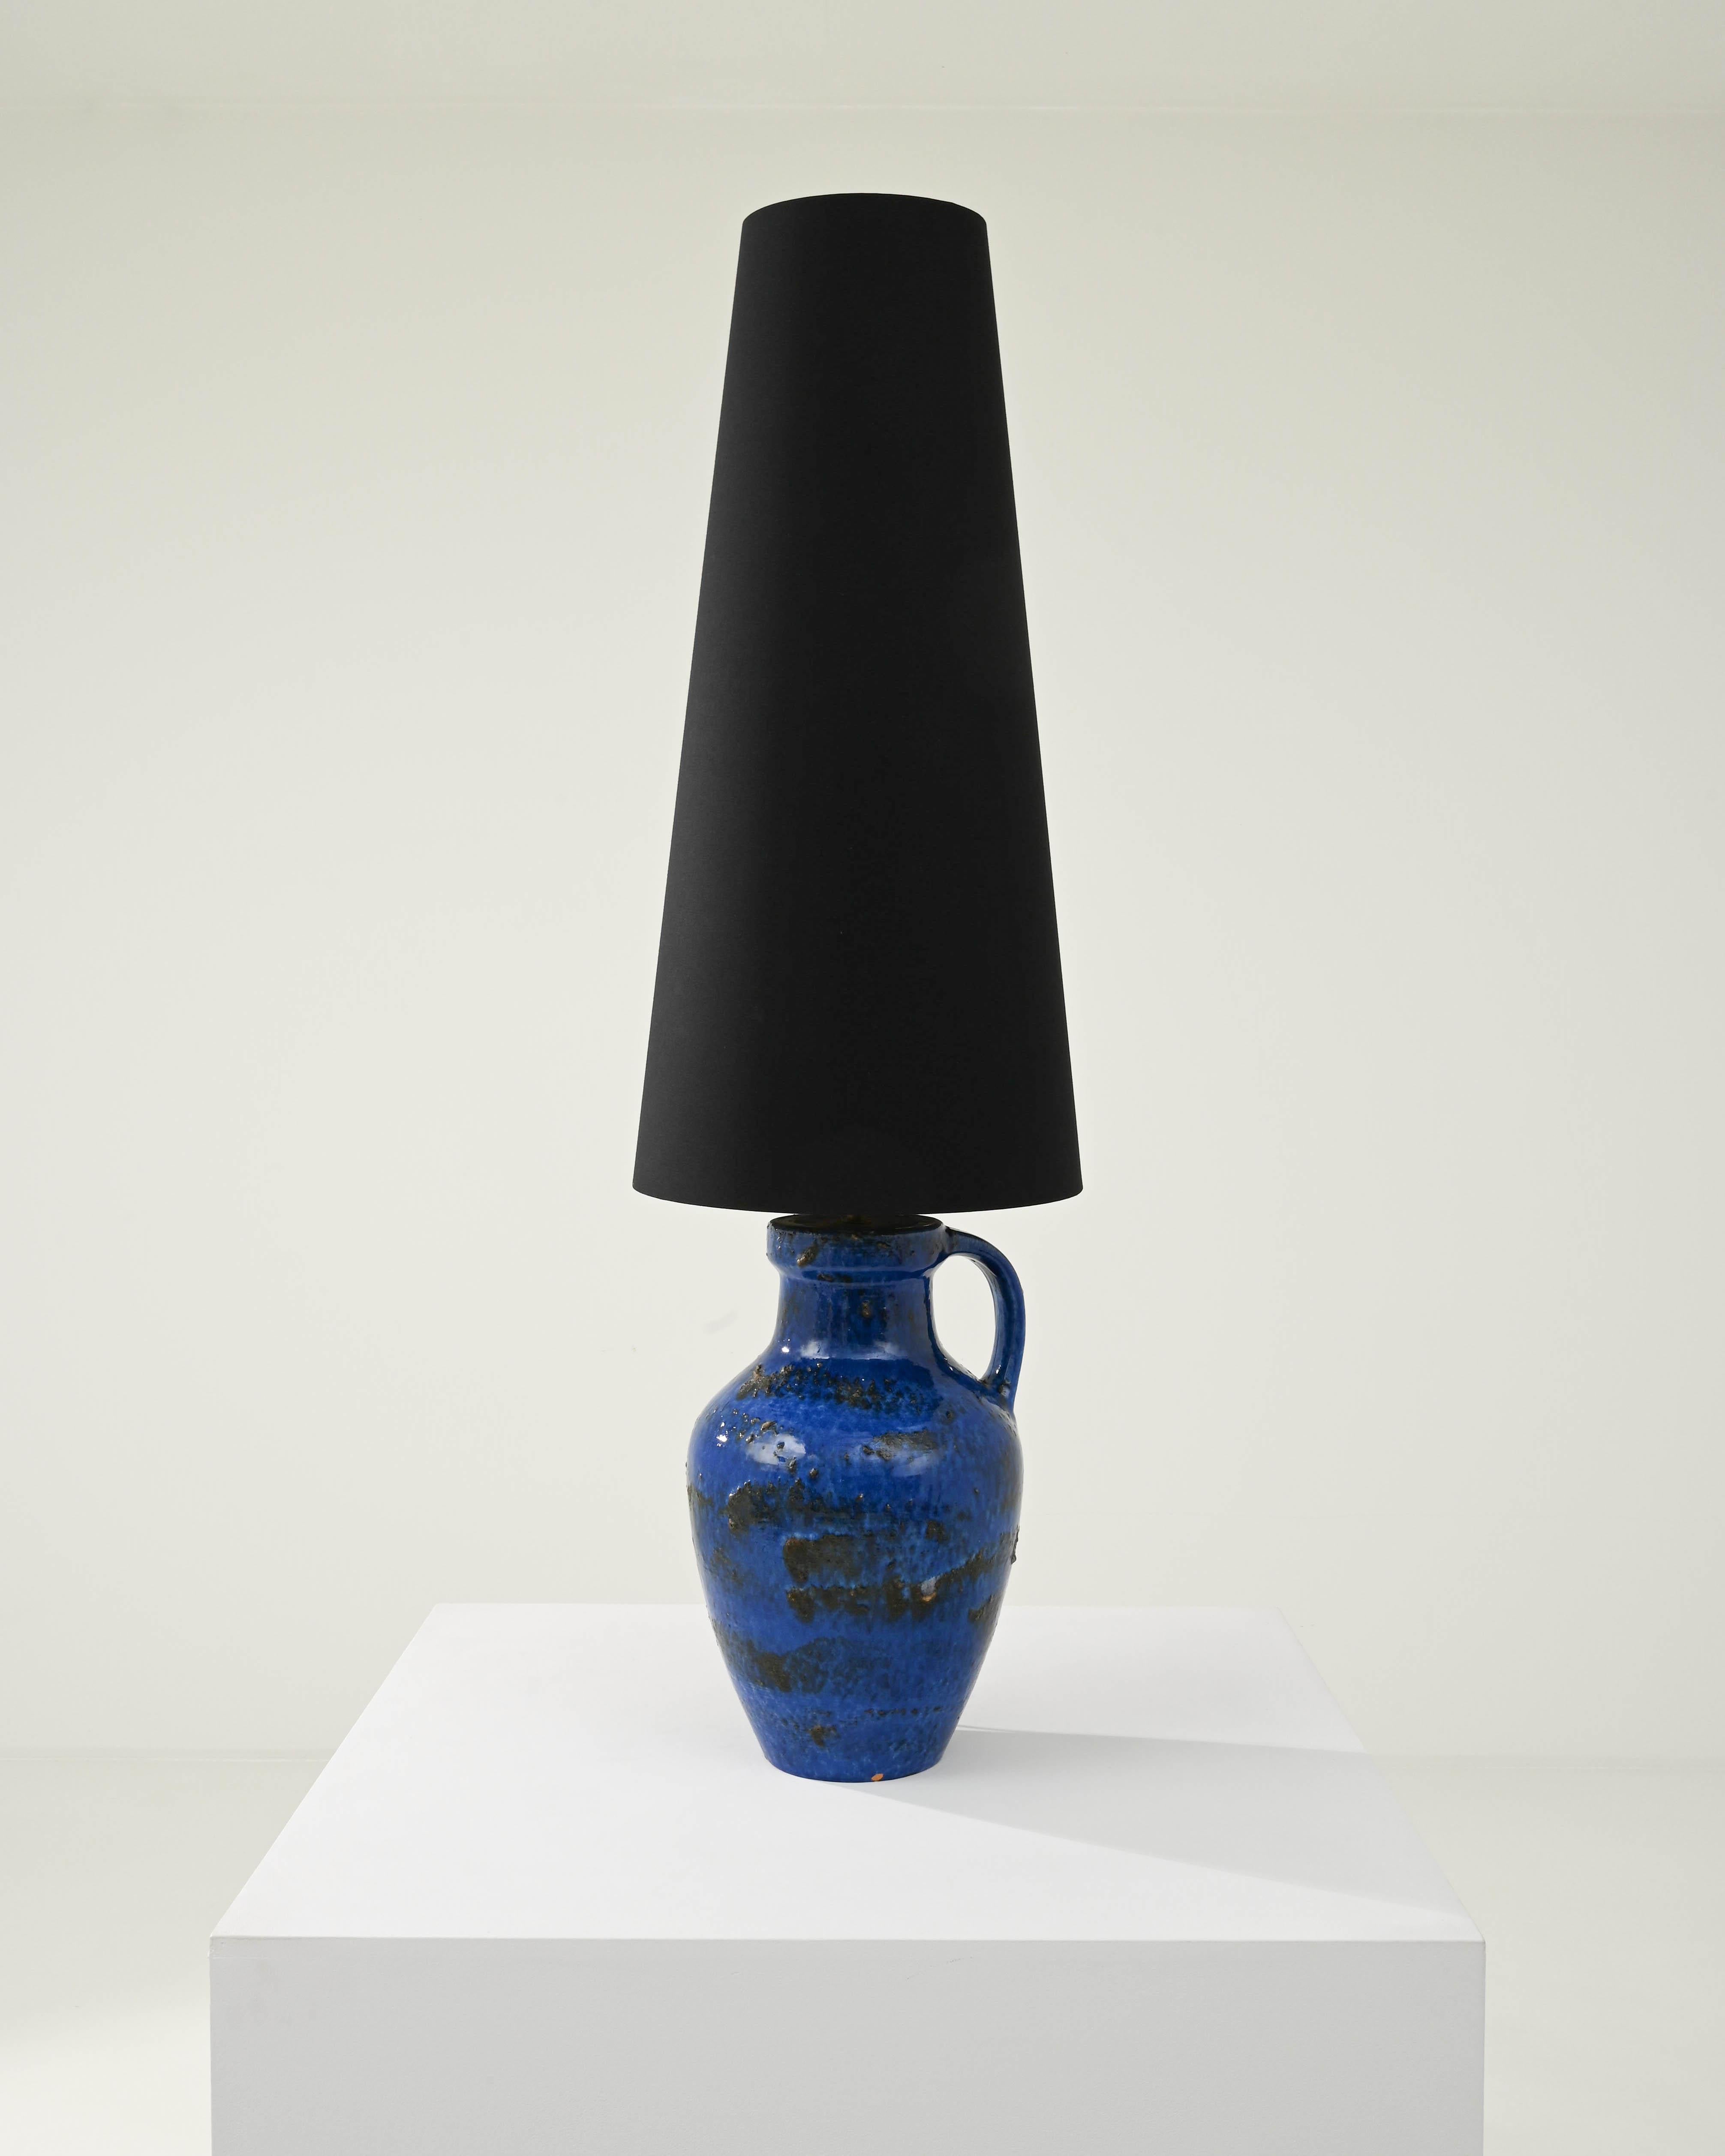 Ein außergewöhnlicher Fund, der Ihre Sammlung inspiriert. Diese in den 1960er Jahren in Deutschland entworfene Vase wurde in eine schöne Tischleuchte umgewandelt; der hohe schwarze Lampenschirm wird von einer Messingfassung getragen. Der Stoffschirm